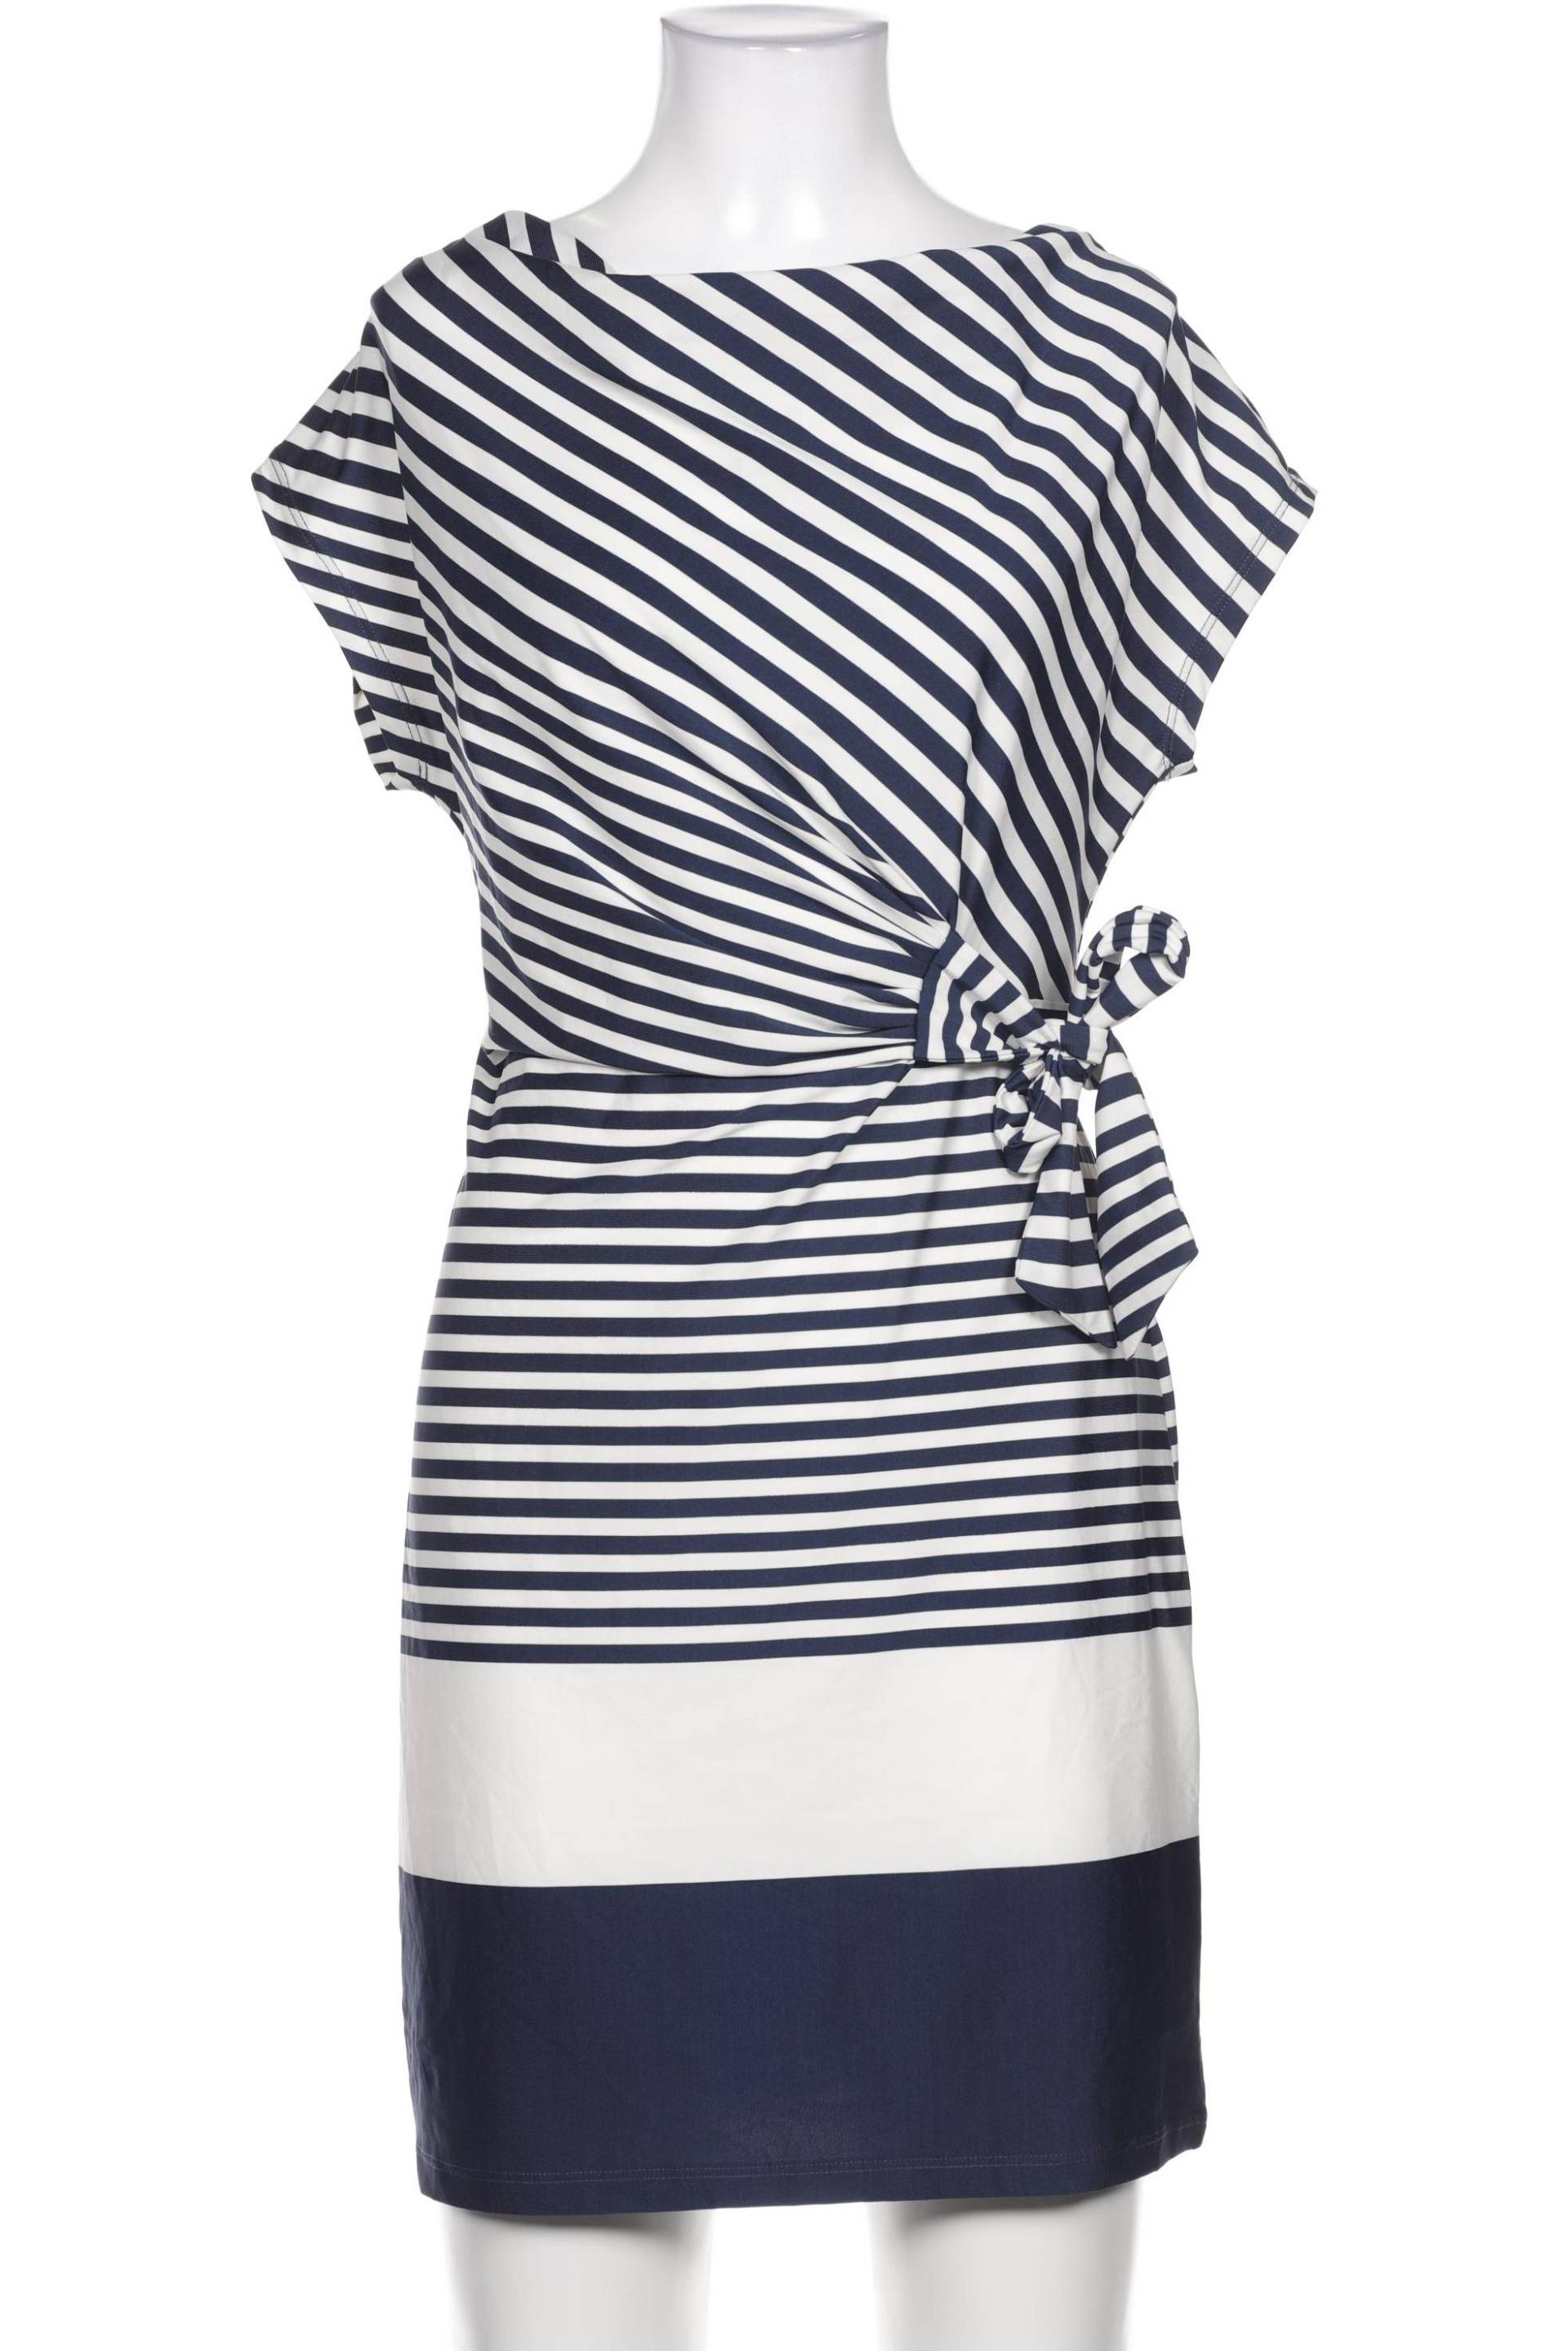 Montego Damen Kleid, marineblau, Gr. 38 von montego